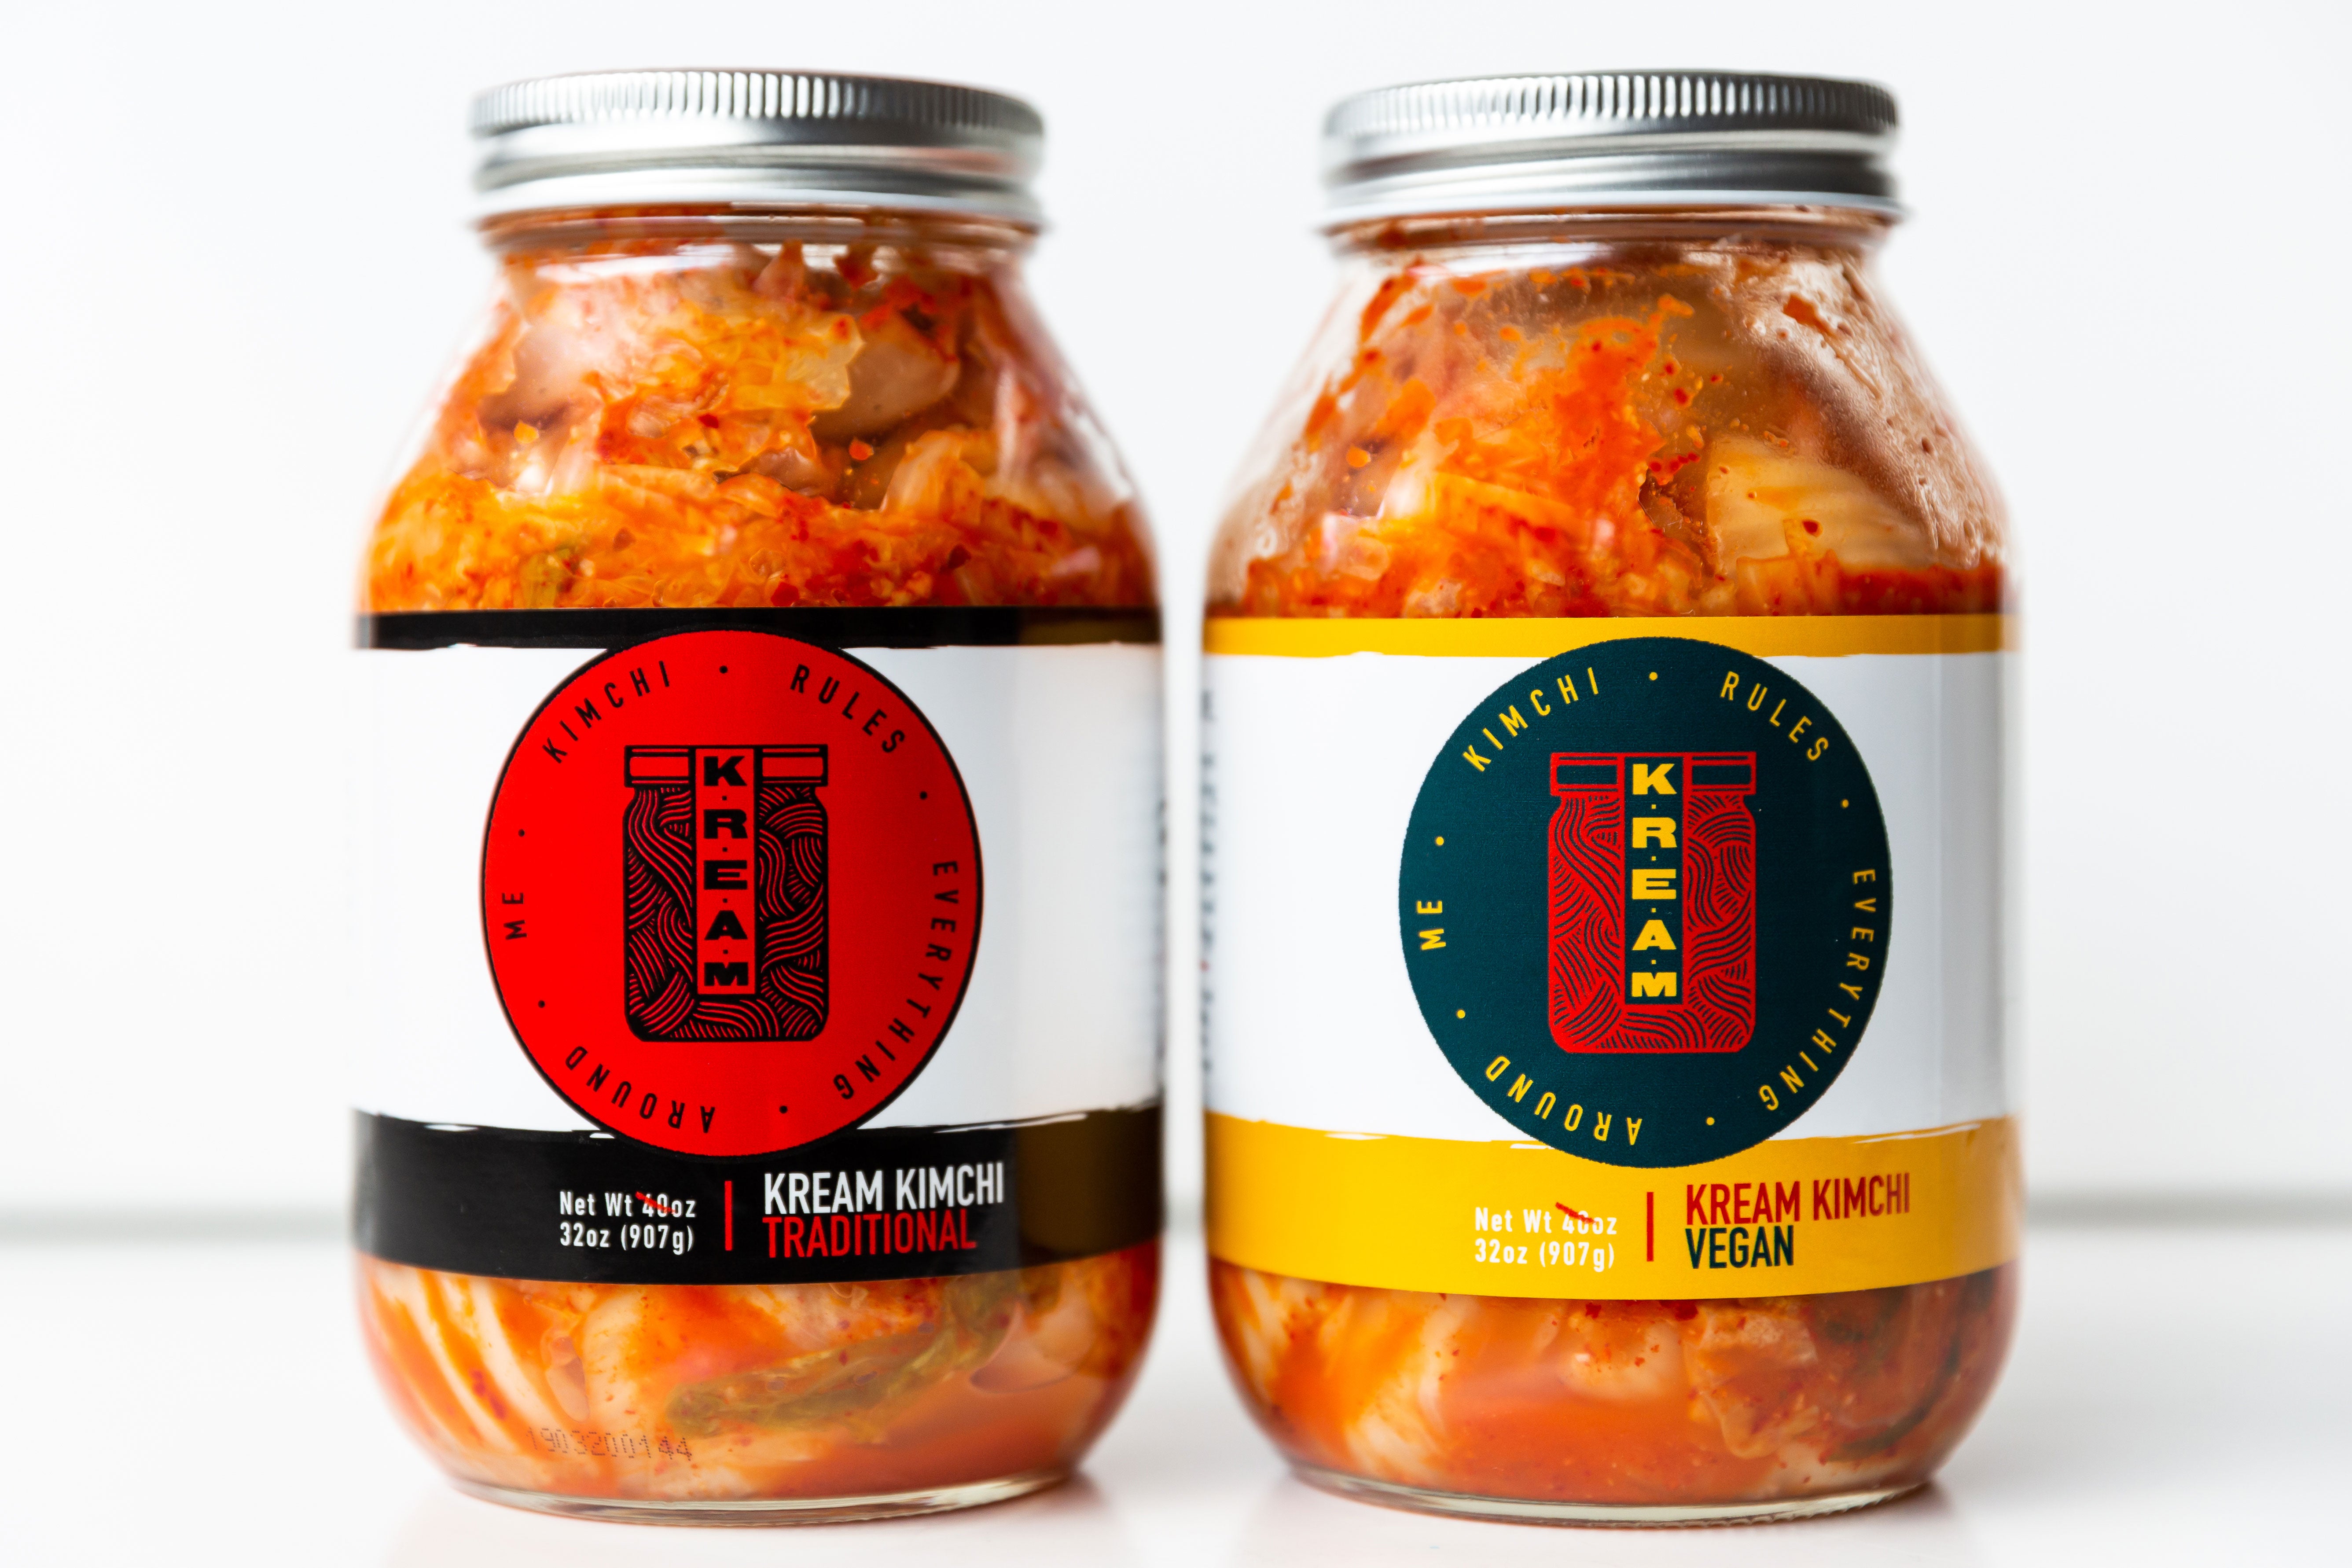 ....Kimchi (Traditional or Vegan)